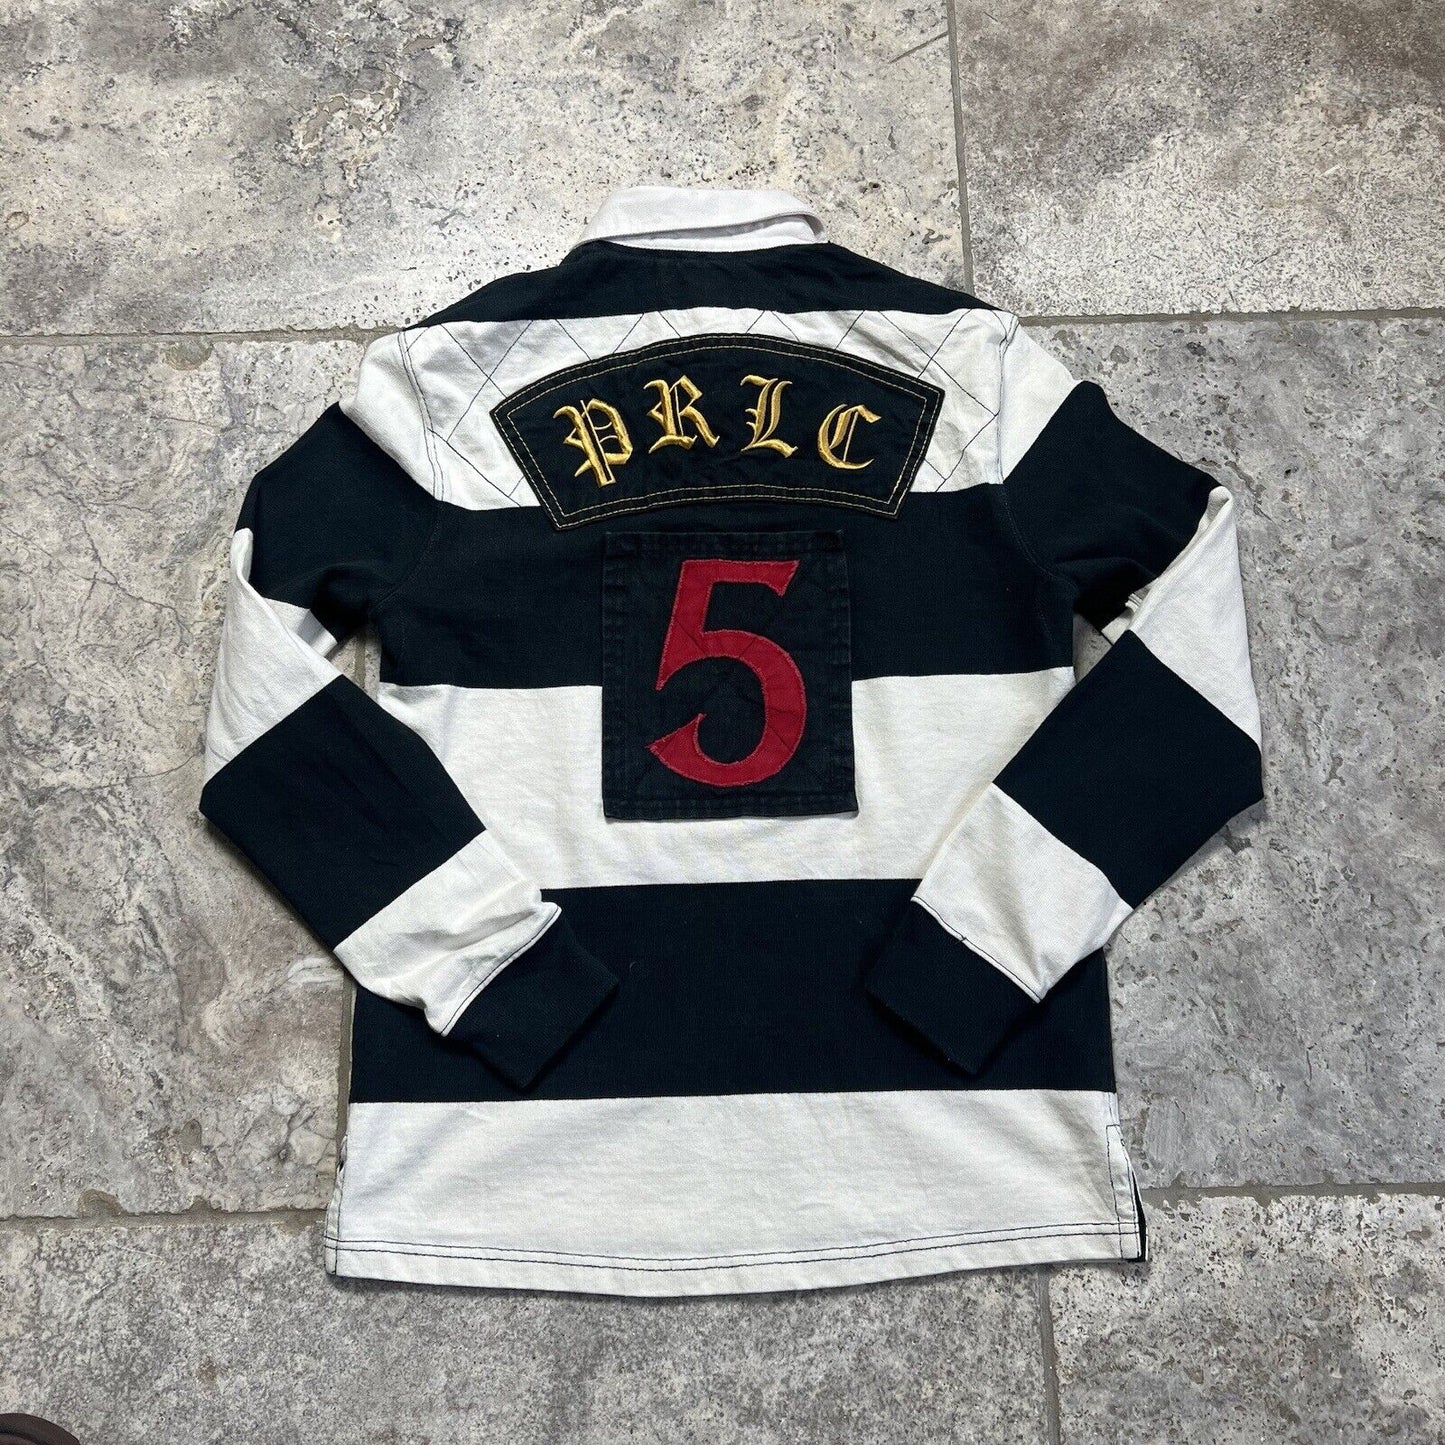 Mens Ralph Lauren Rugby Shirt Size Medium